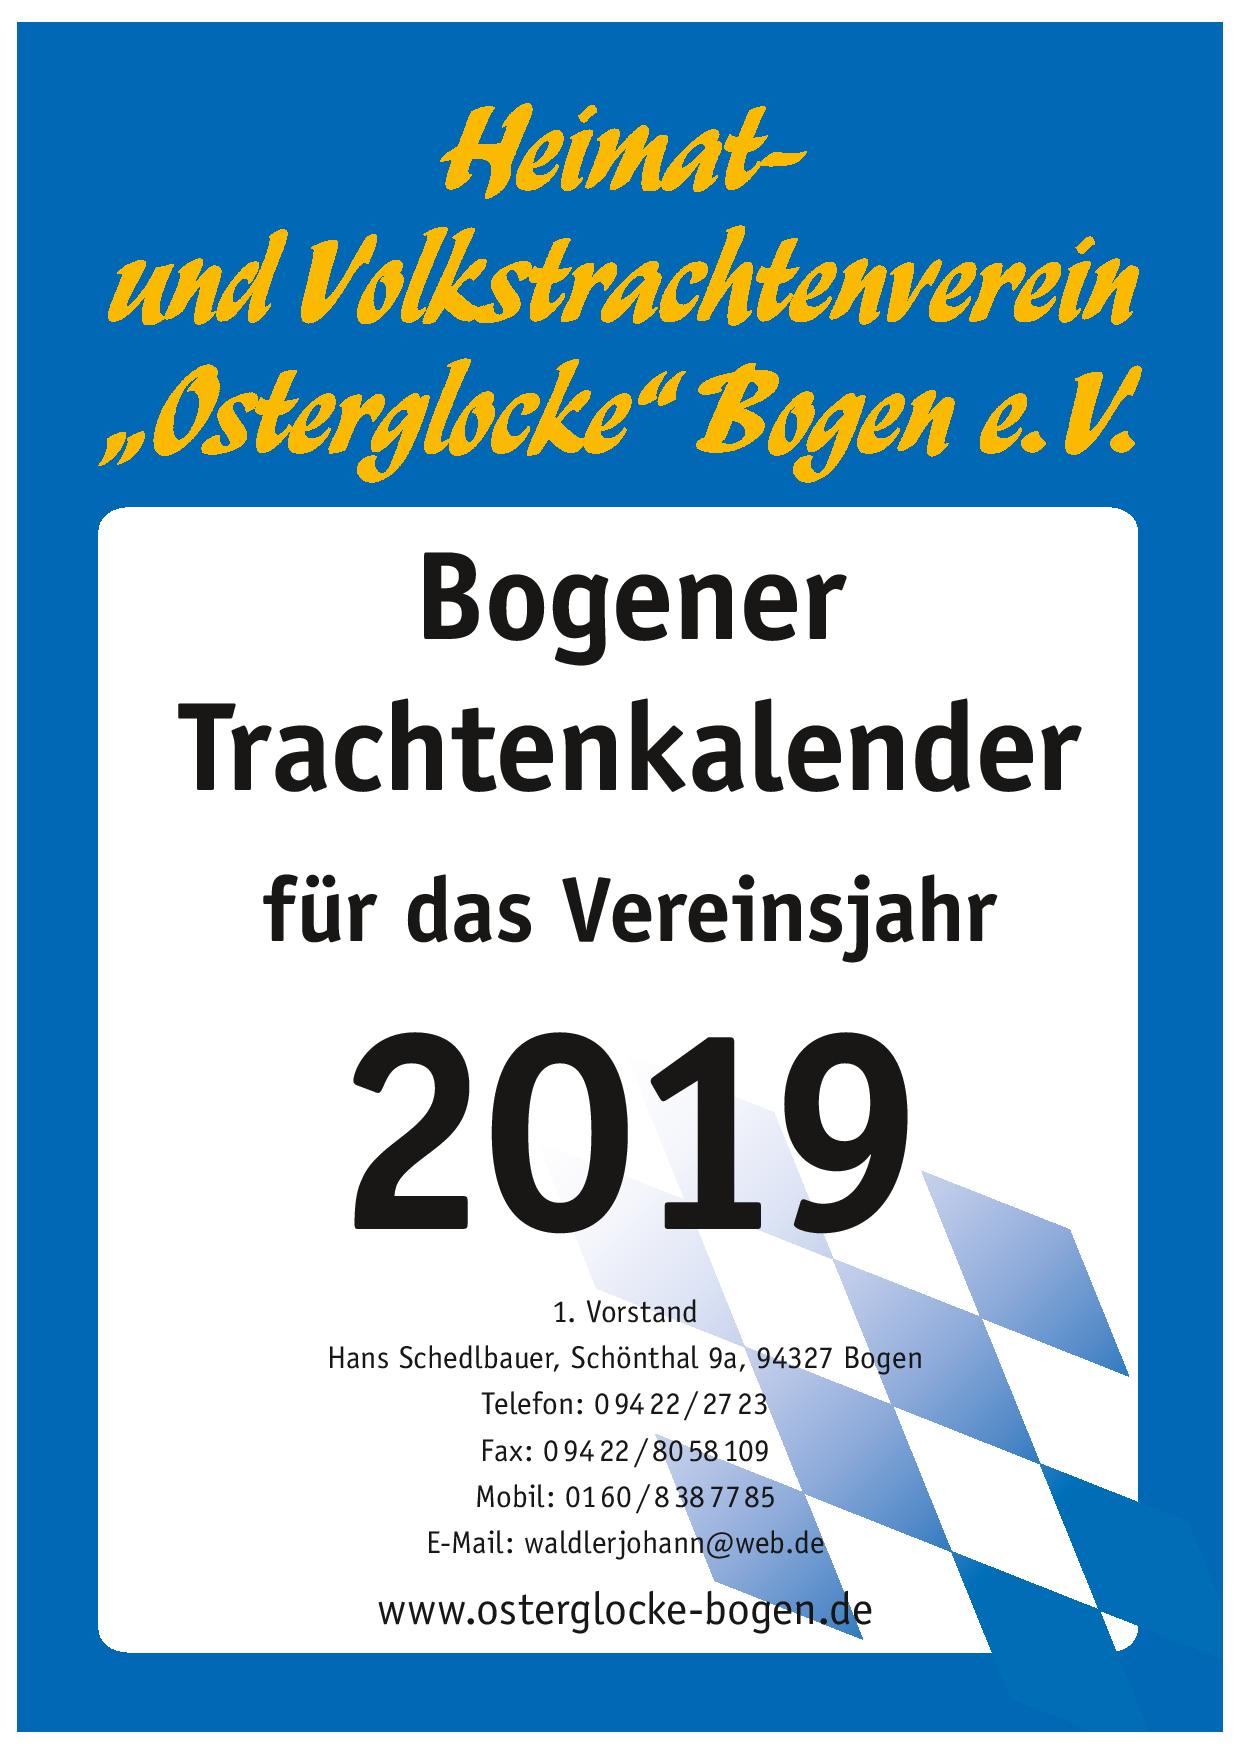 Bogener Trachtenkalender 2019 (Deckblatt)